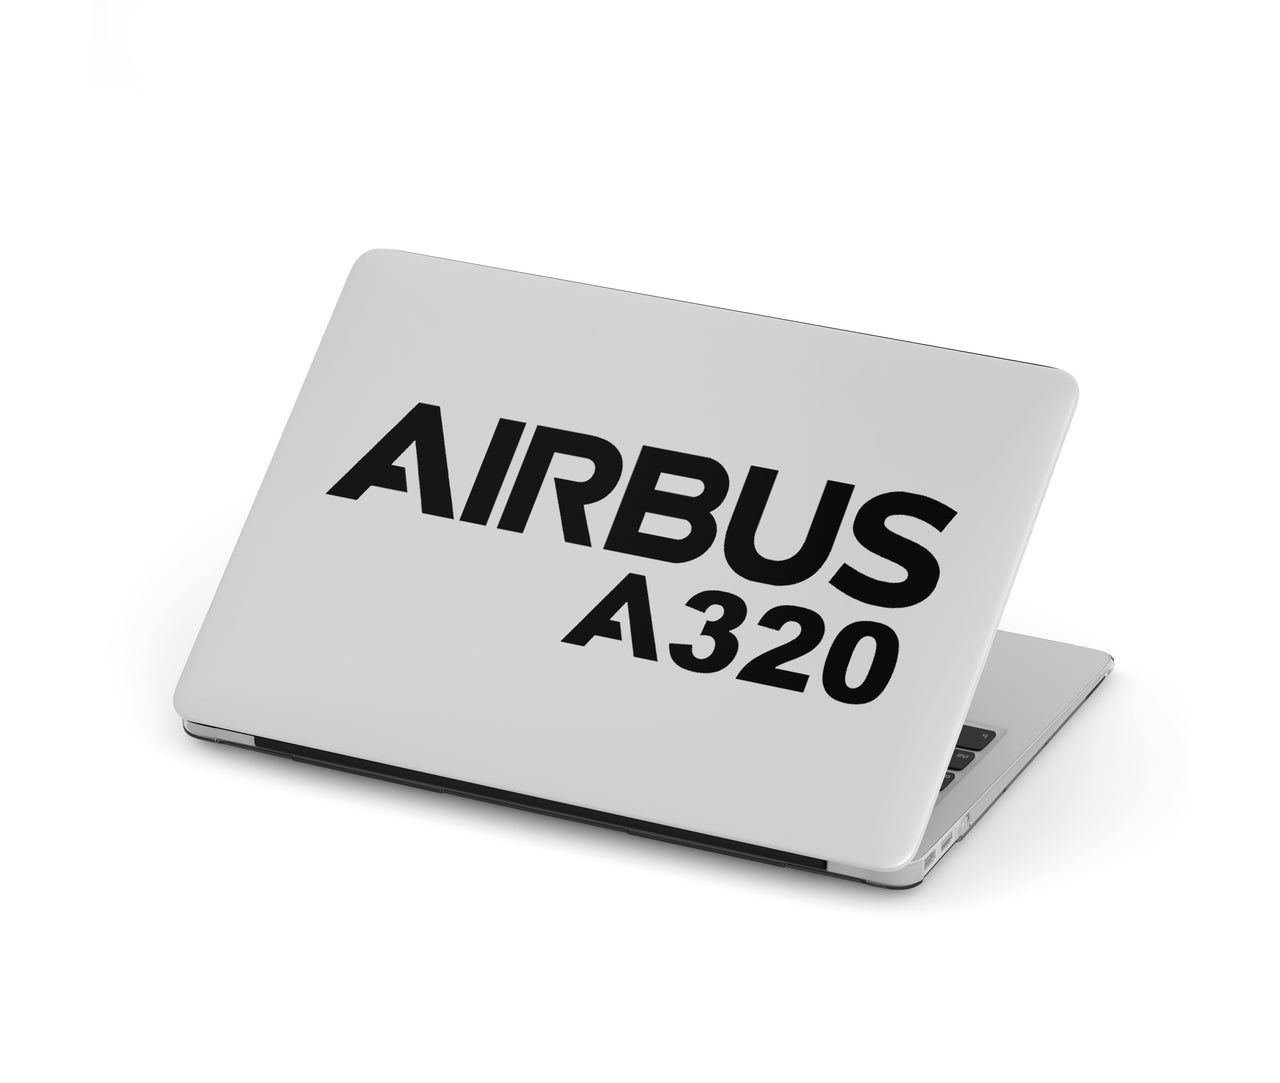 Airbus A320 & Text Designed Macbook Cases